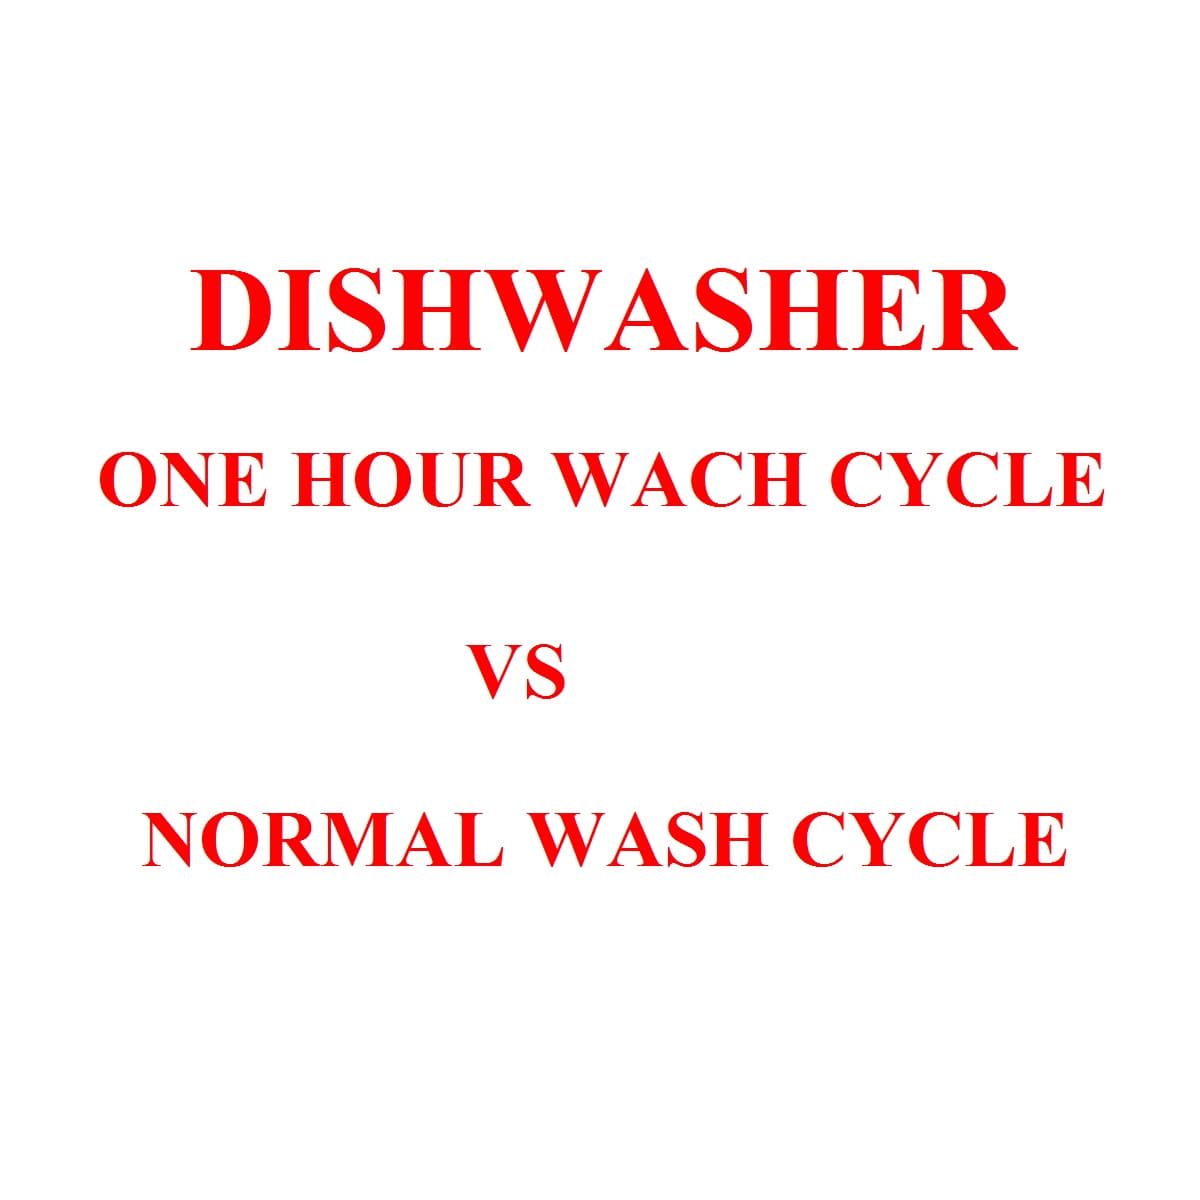 Dishwasher 1 hour wash vs normal